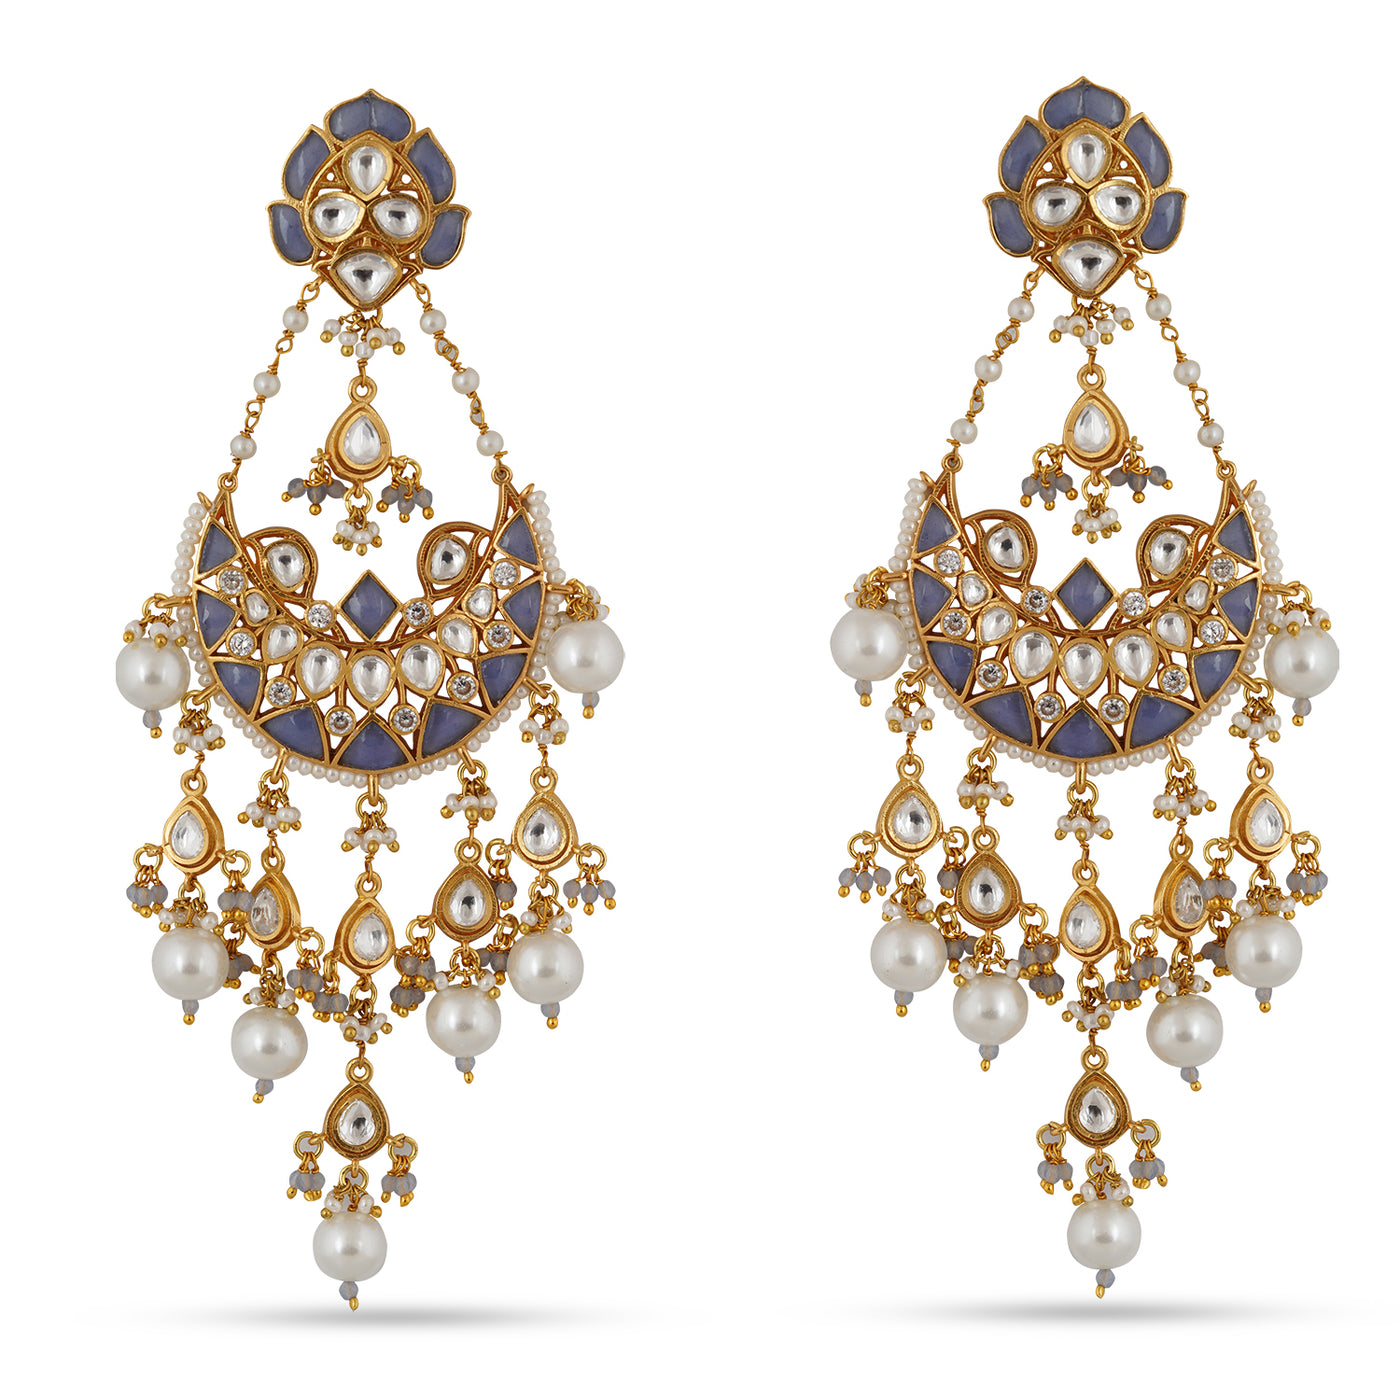 Huda - Chandbali earrings